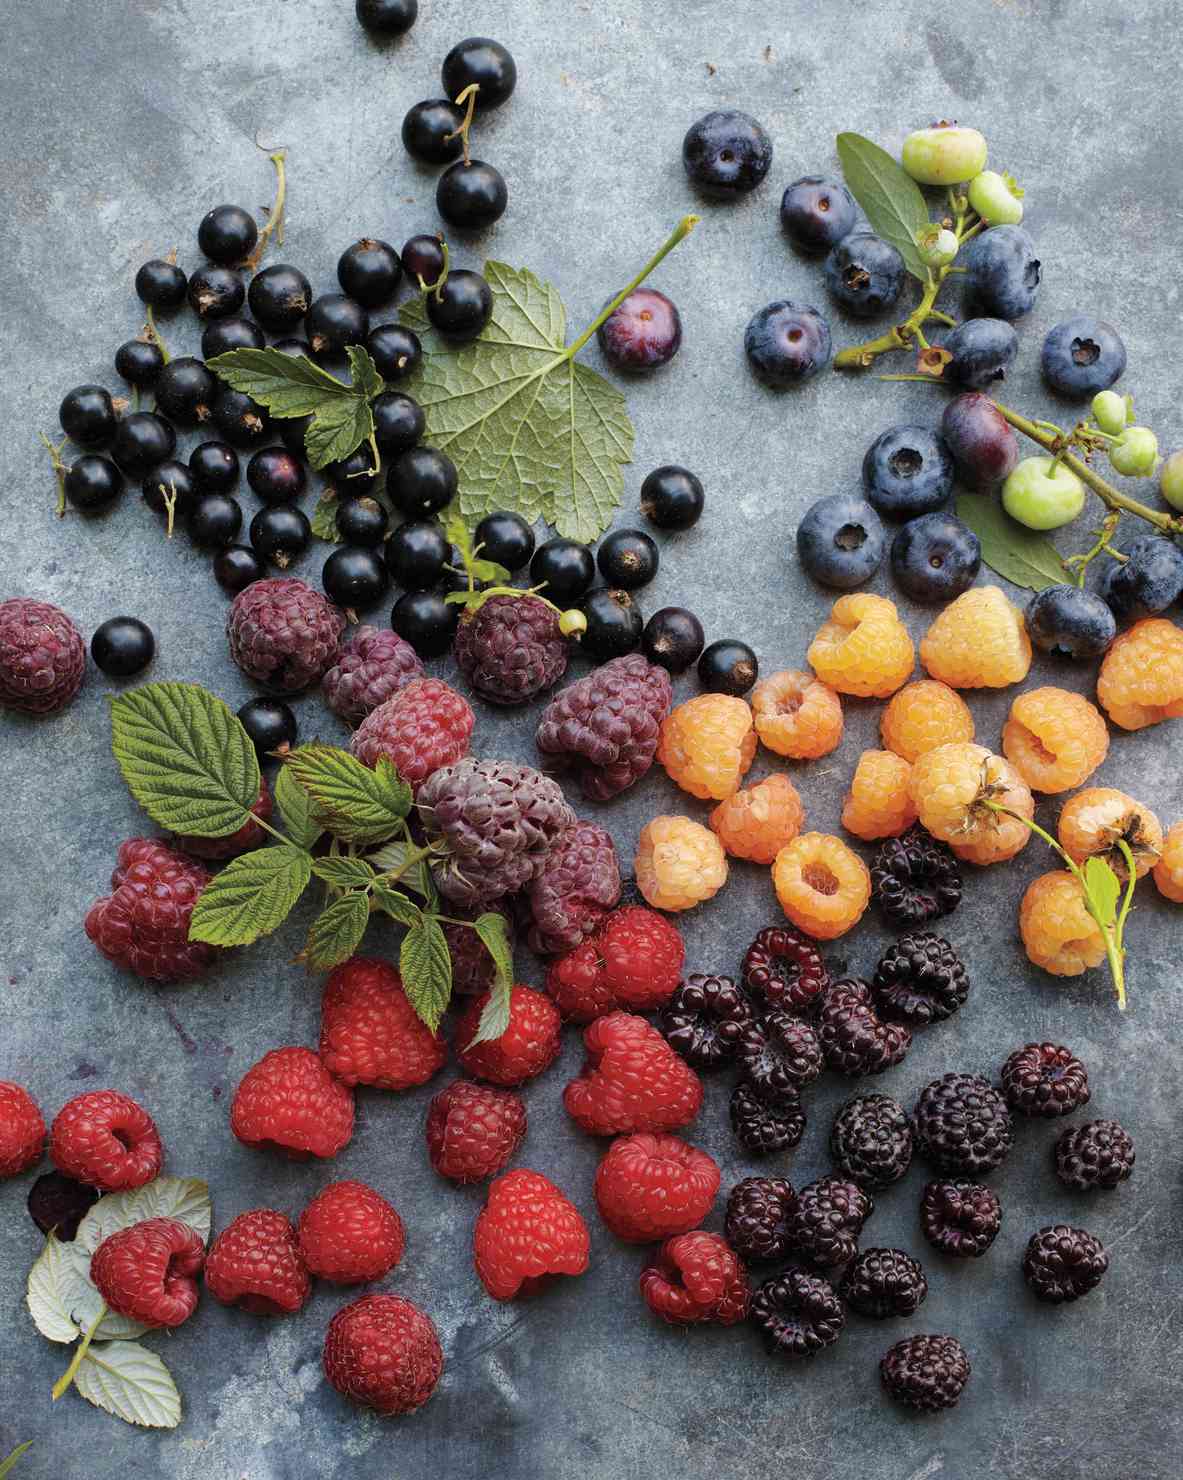 Berries (Blackberries, Blueberries, Currants, Raspberries, Strawberries)